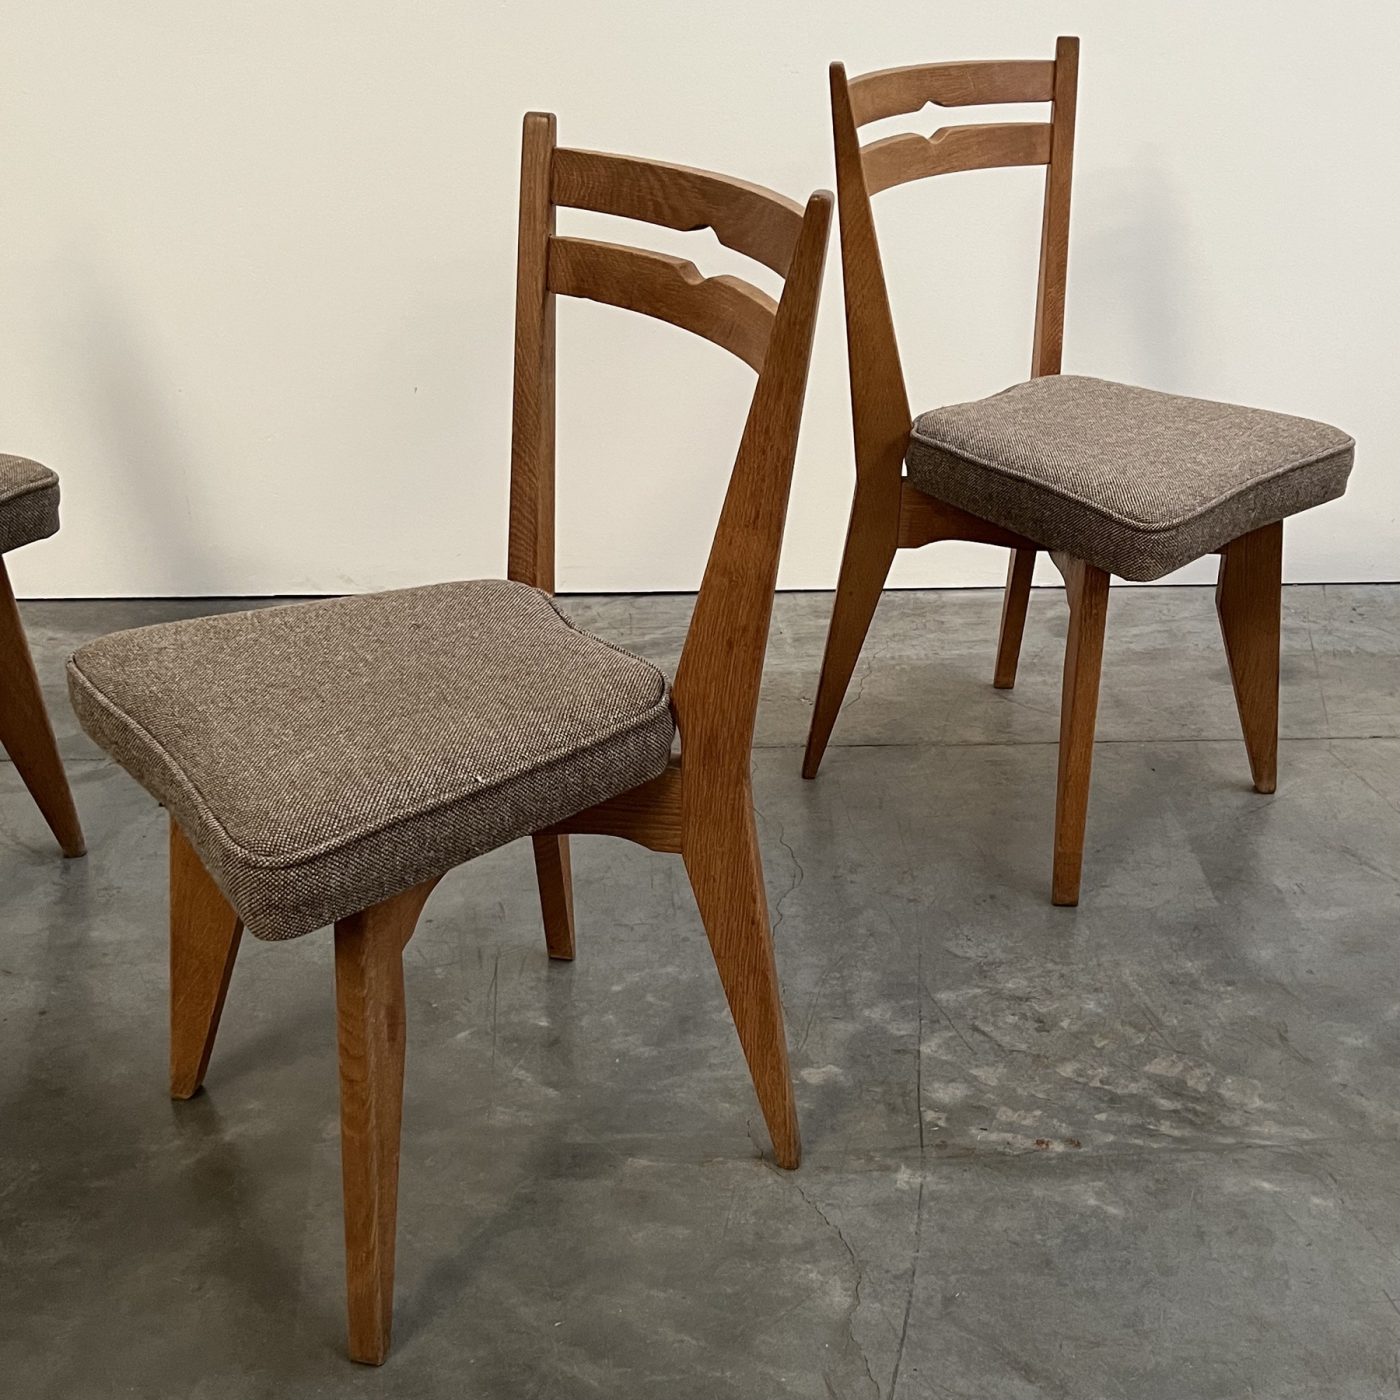 objet-vagabond-guillerme-chairs0005